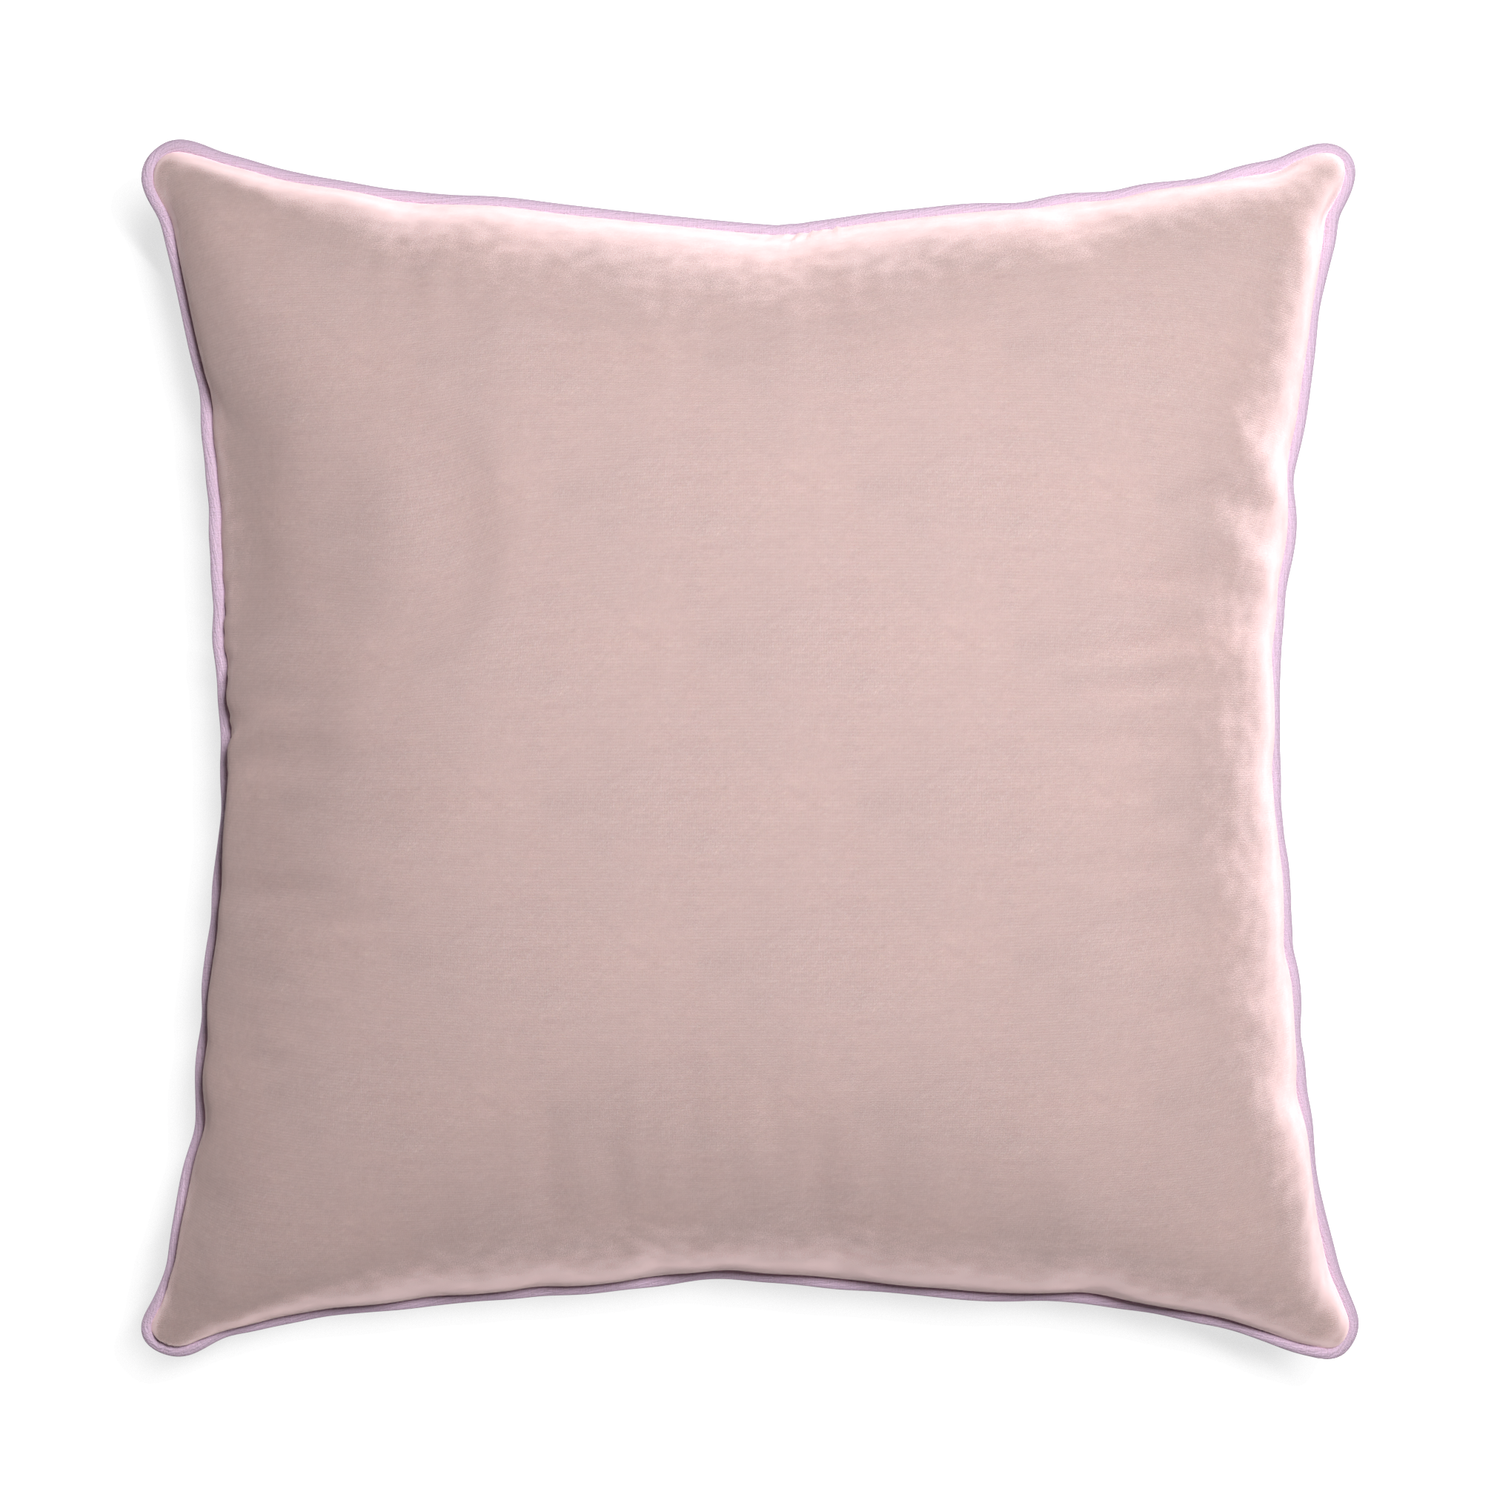 Euro-sham rose velvet custom pillow with l piping on white background